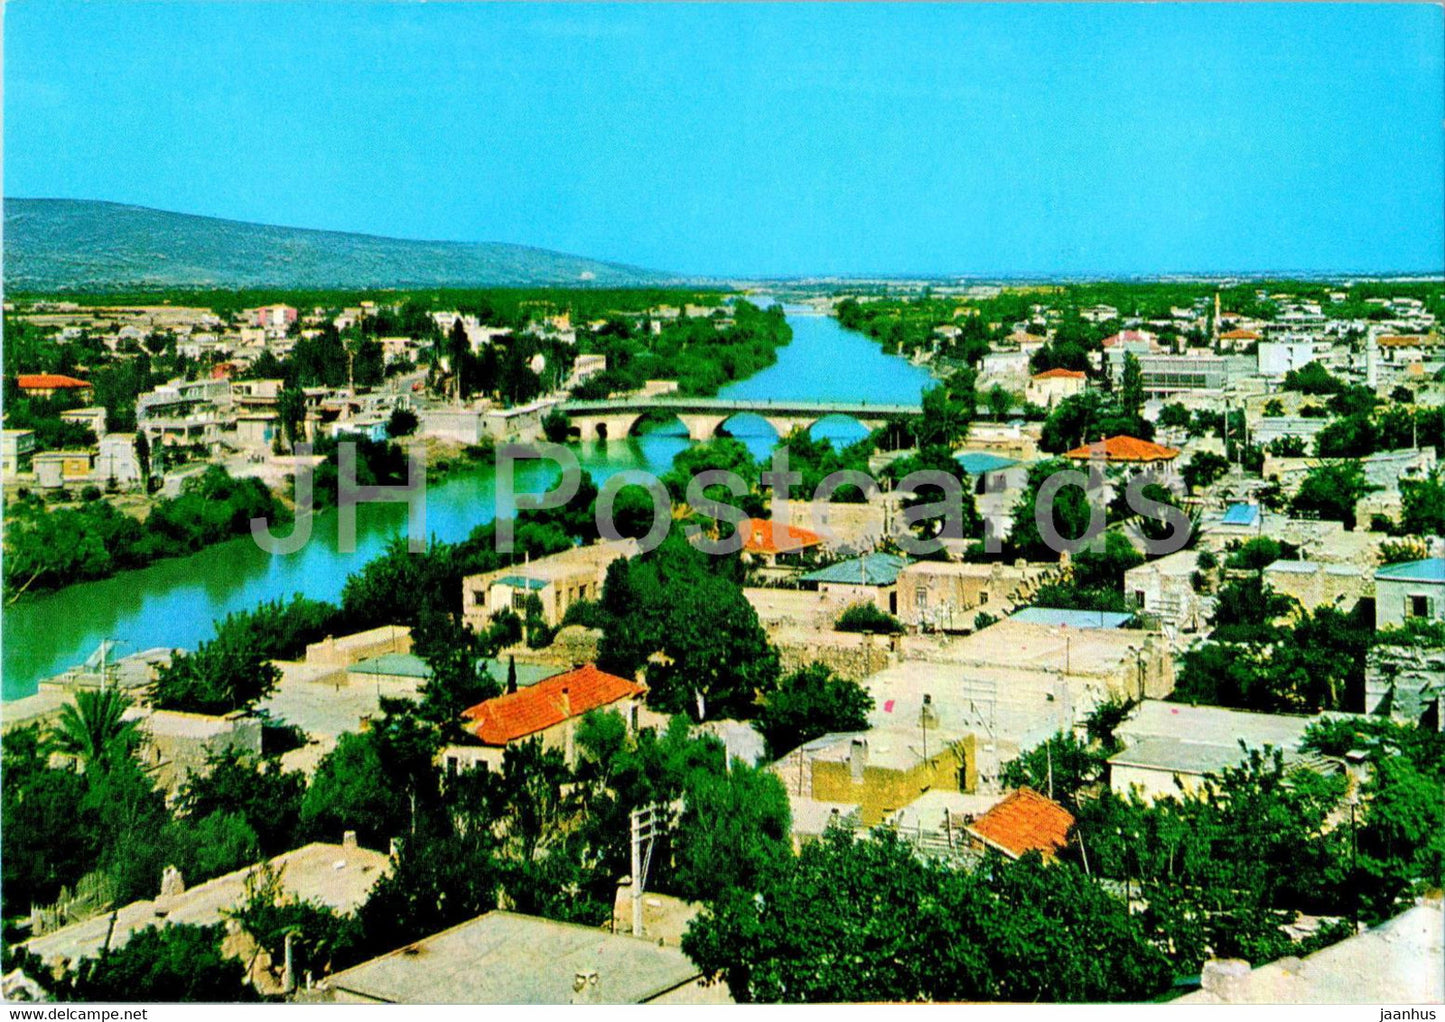 Silifke - 33-25 - Turkey - unused - JH Postcards